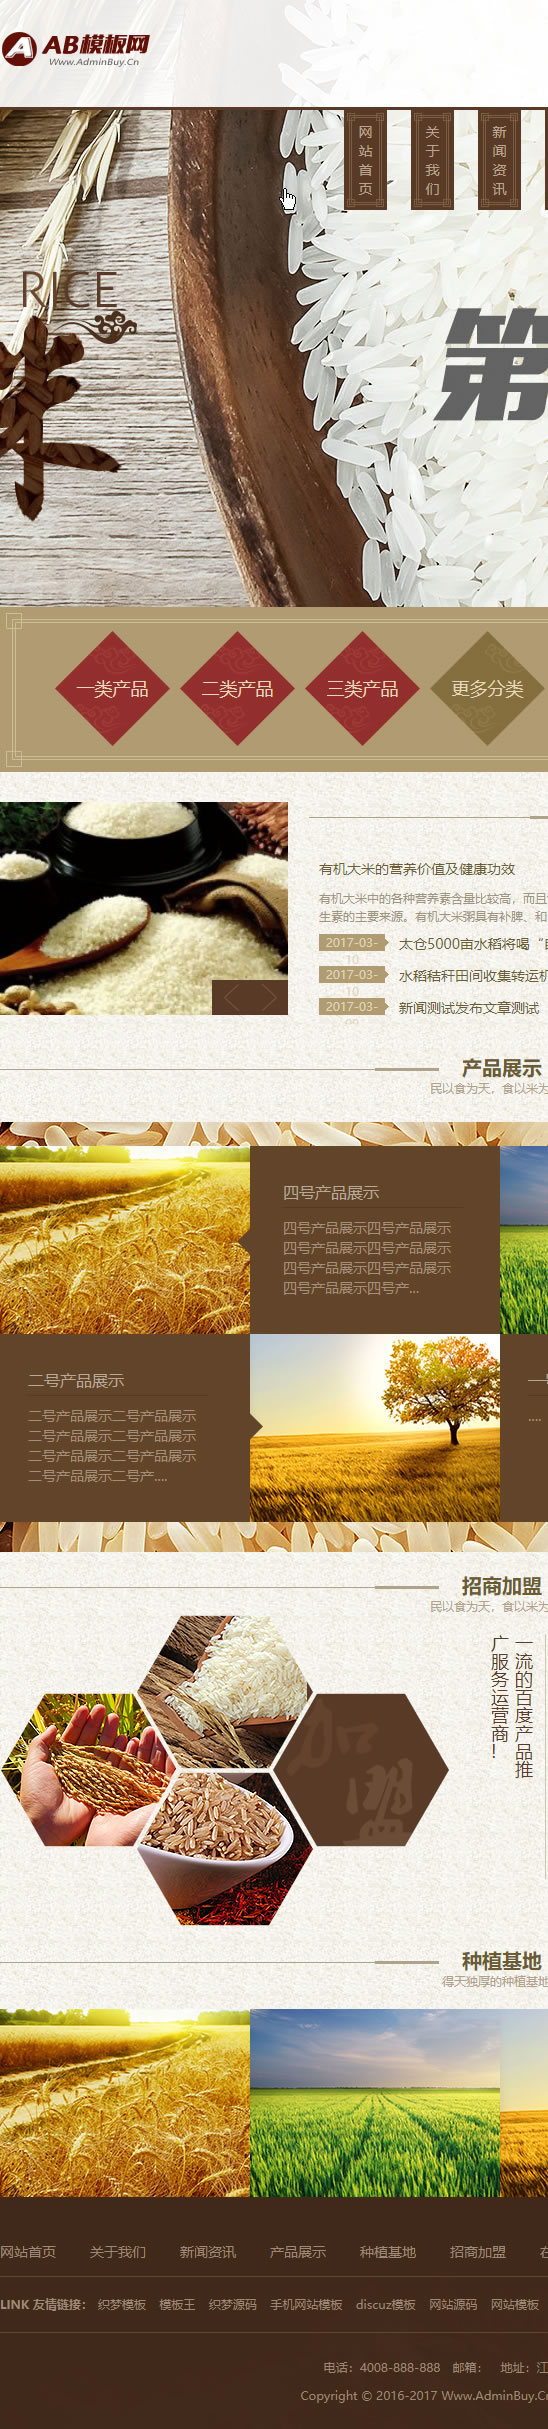 织梦dede模板 棕色有机大米谷物农作物网站源码+手机版